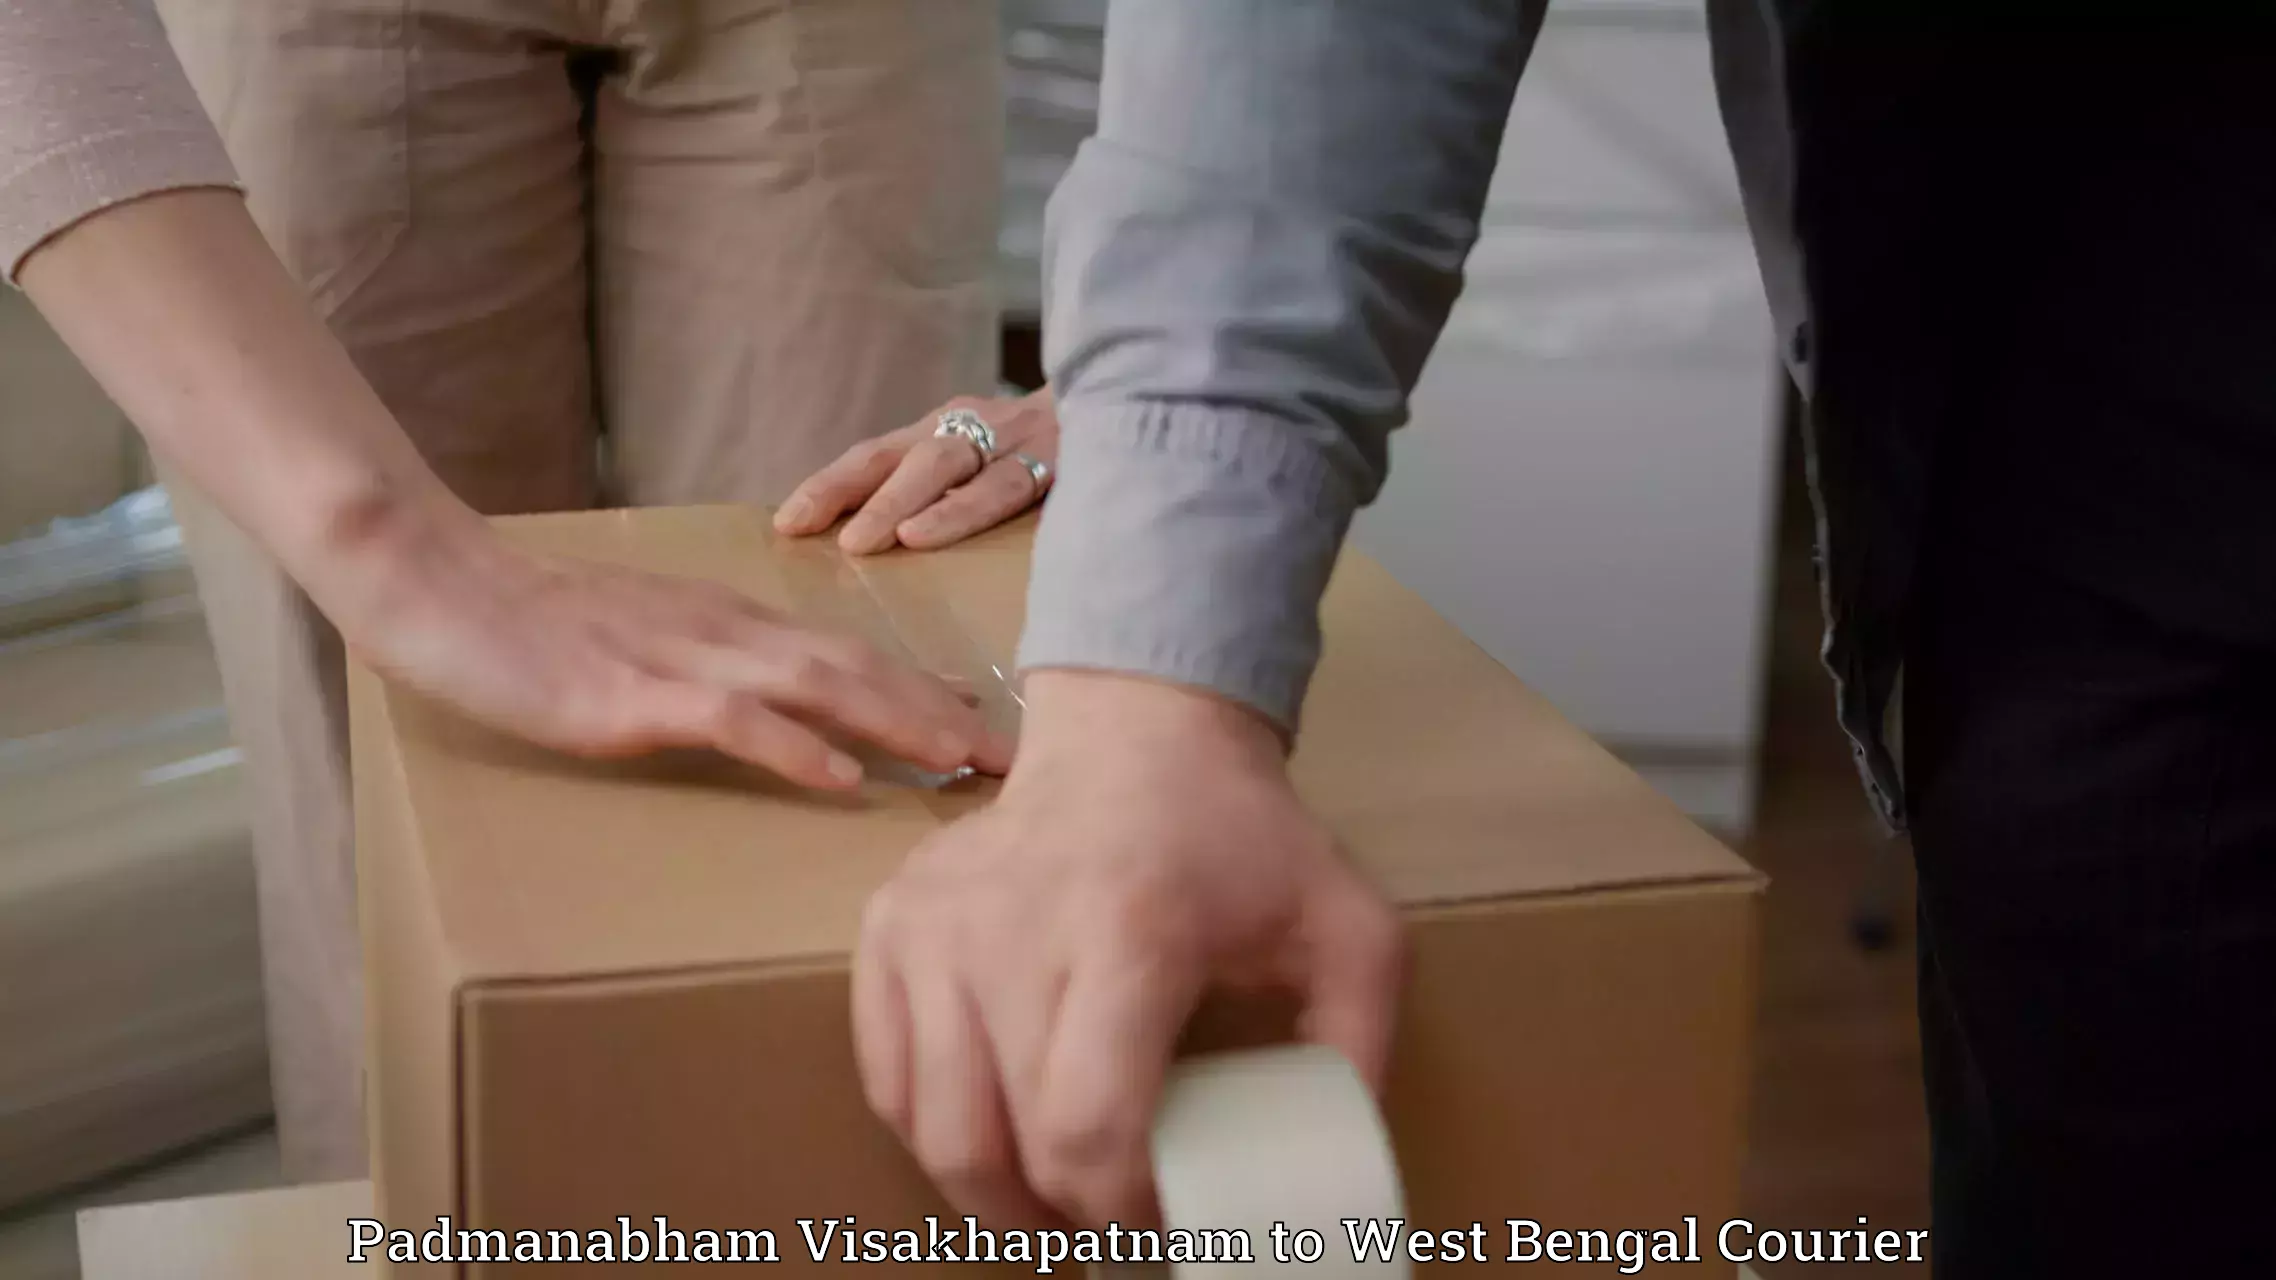 E-commerce shipping Padmanabham Visakhapatnam to West Bengal